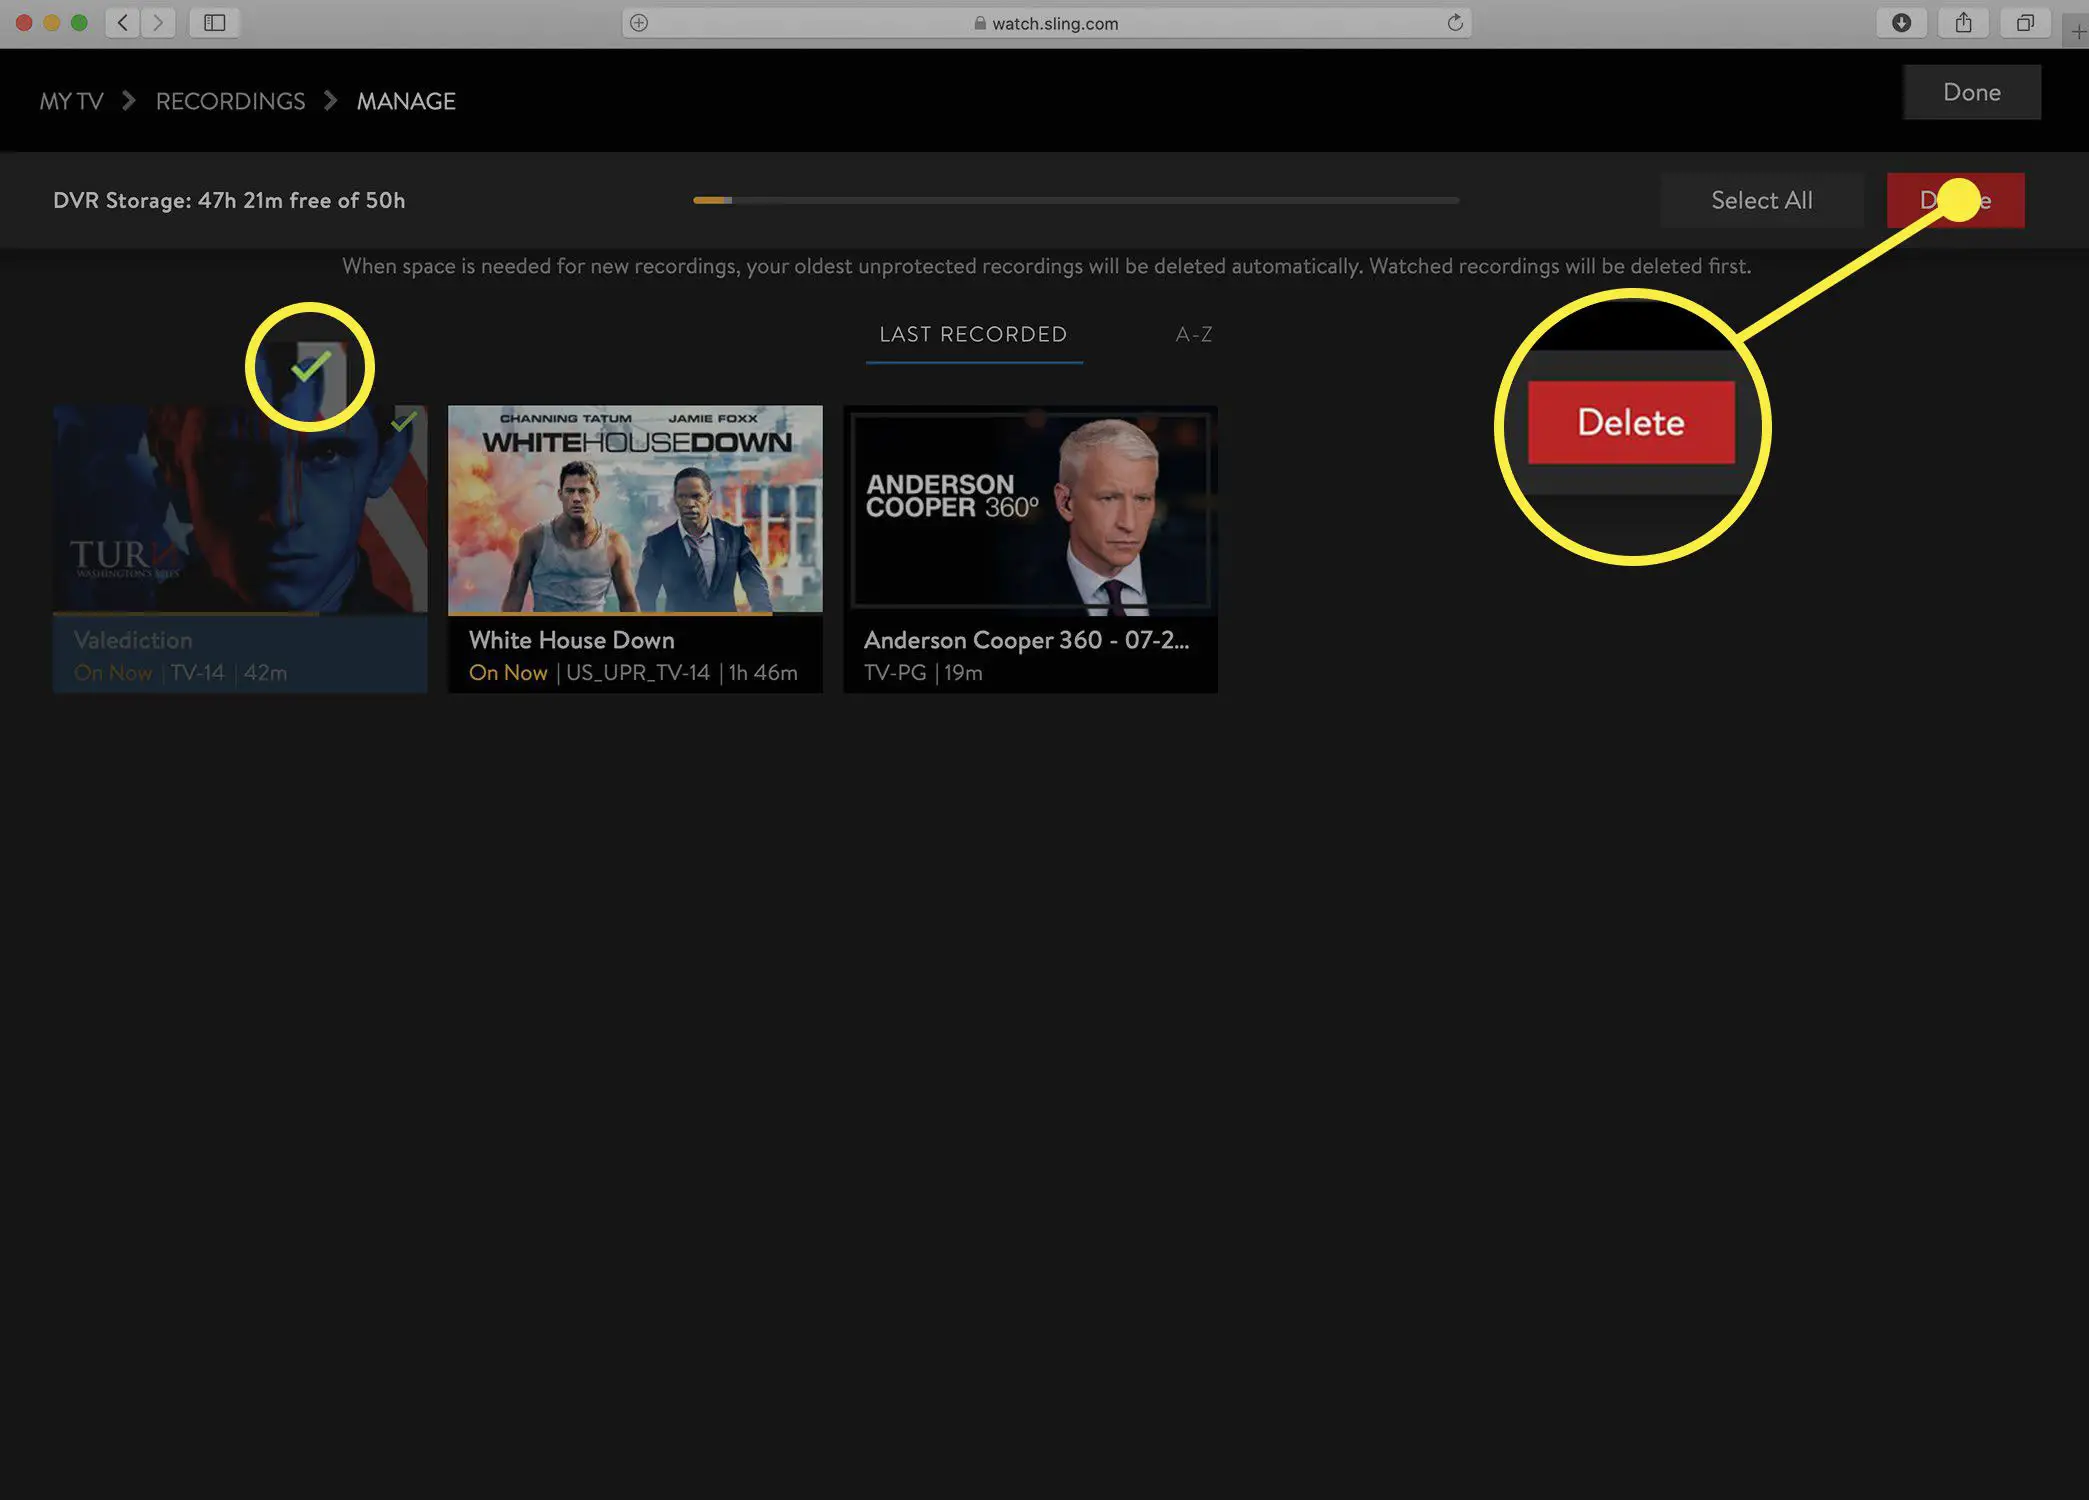 Captura de tela da tela do Sling TV Gerenciar DVR com itens marcados para exclusão.